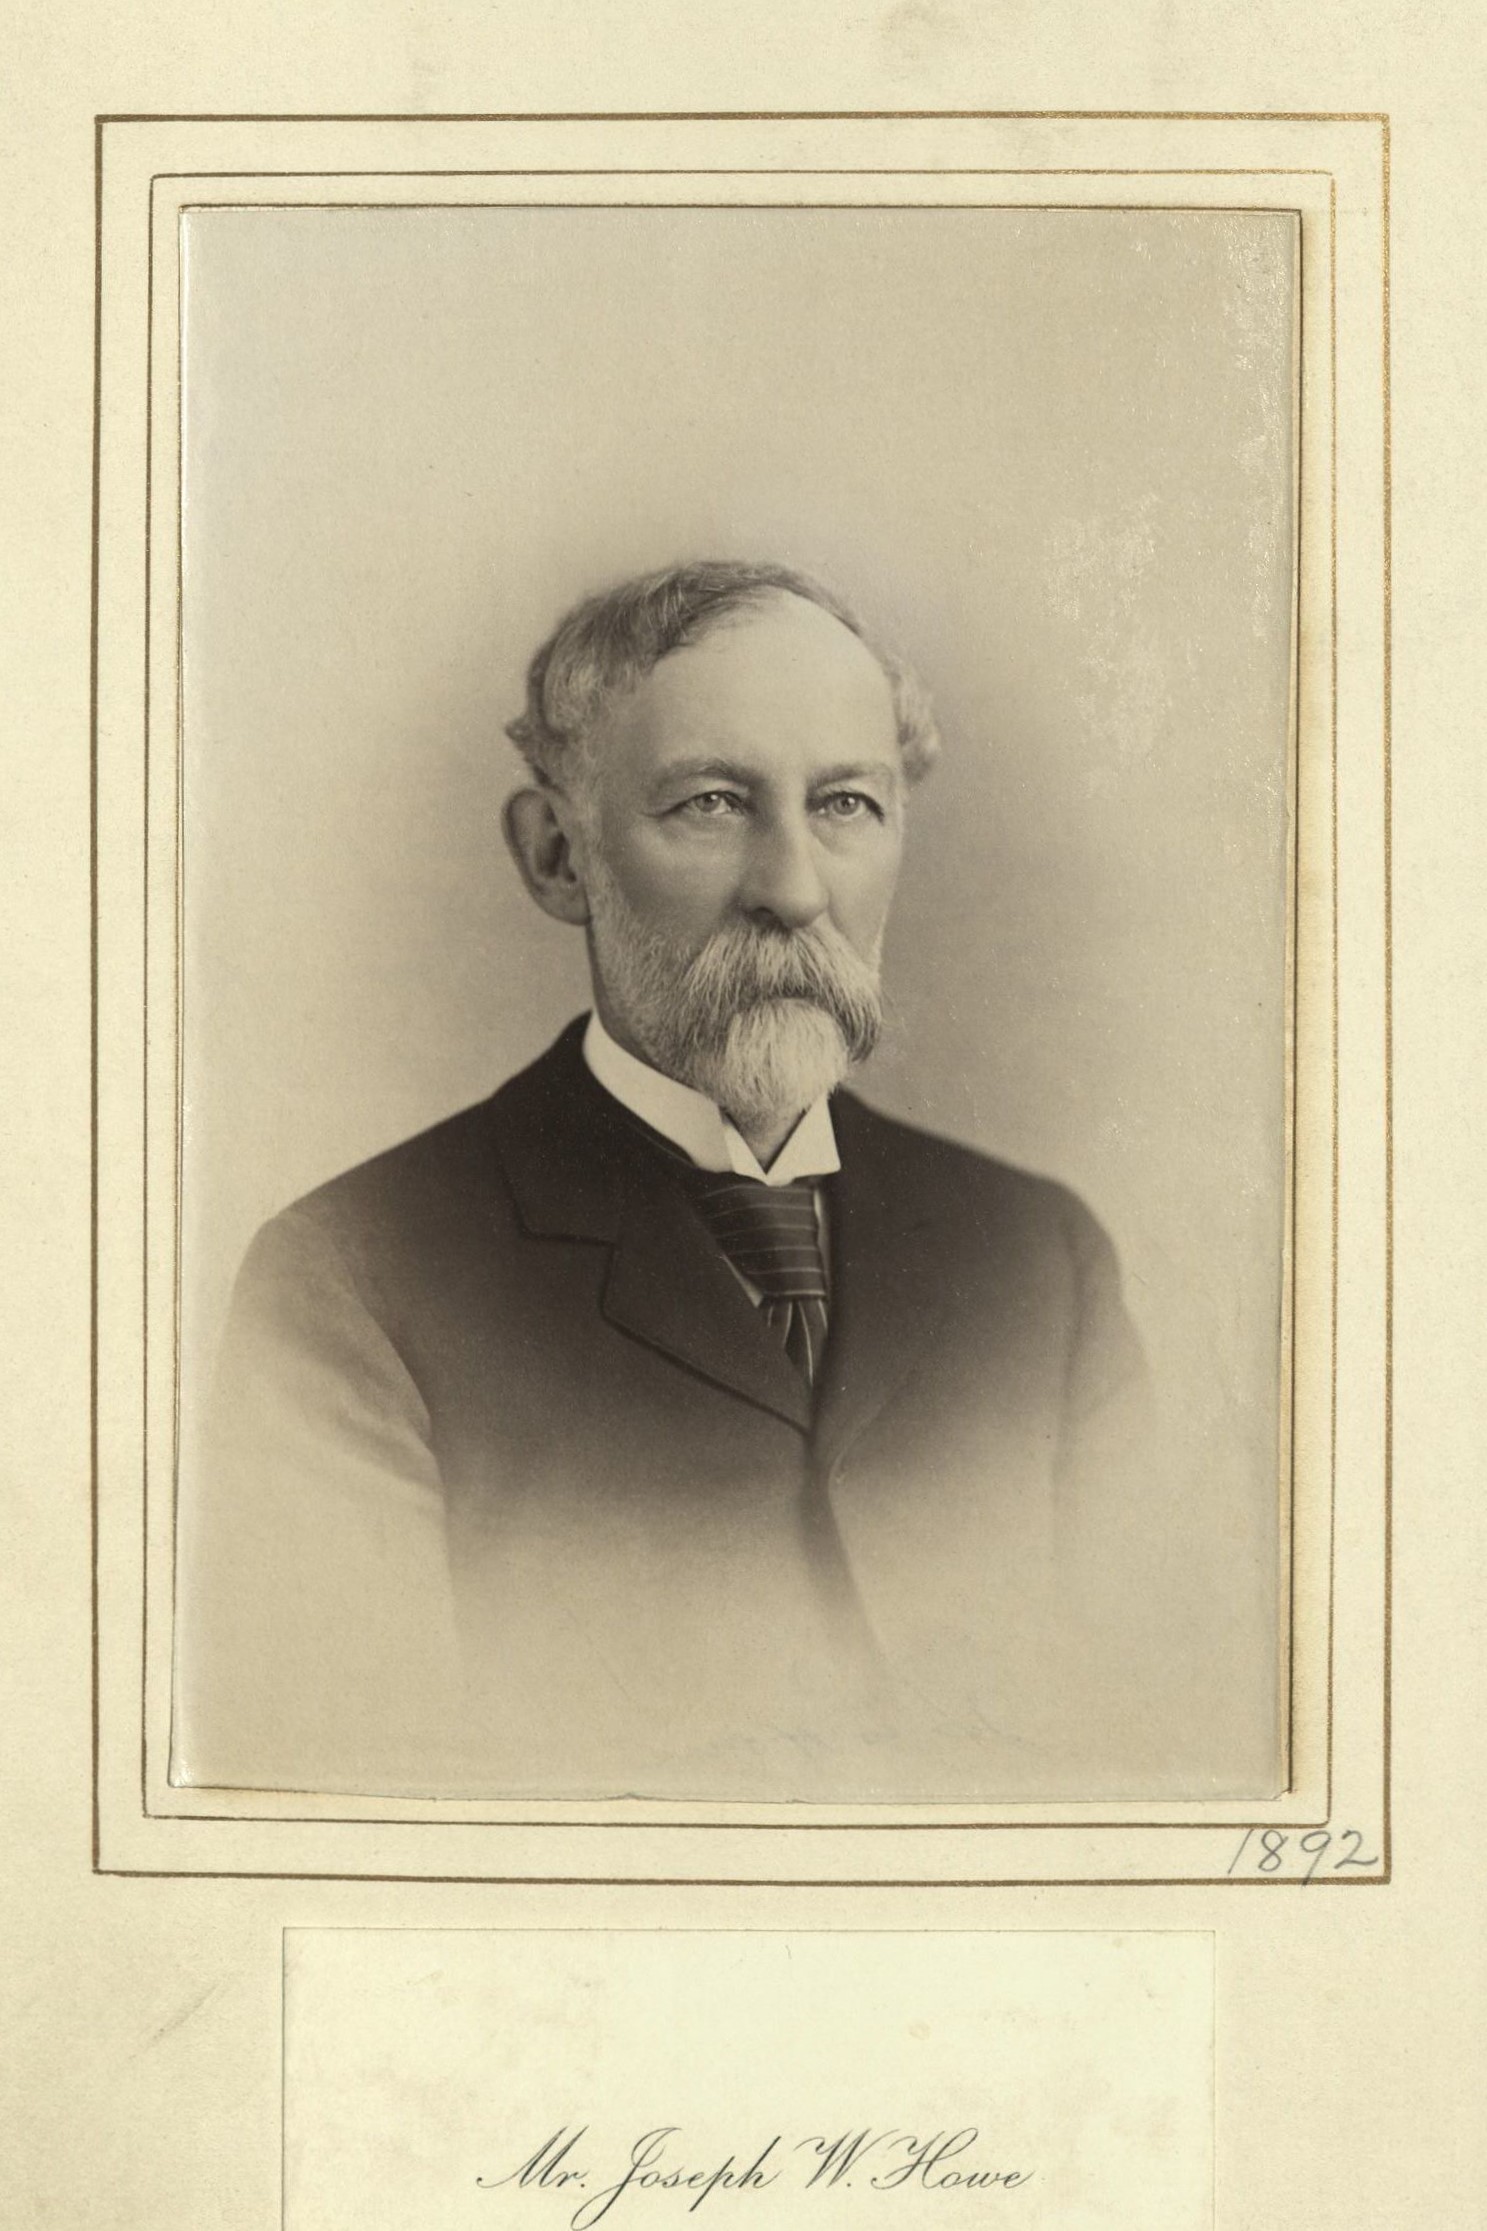 Member portrait of Joseph W. Howe